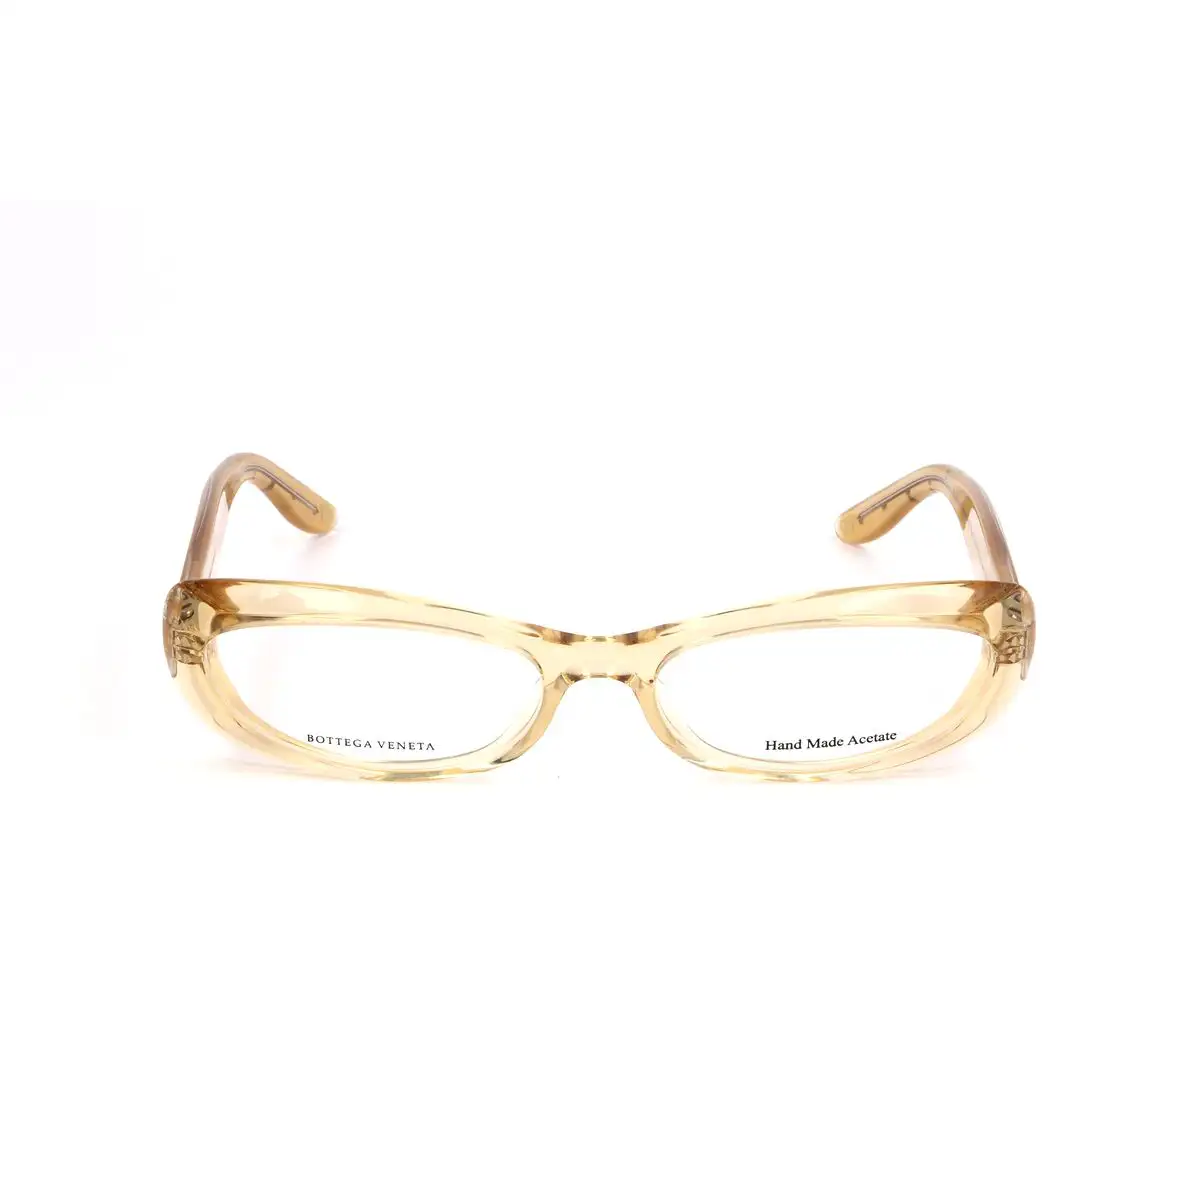 Monture de lunettes femme bottega veneta bv 84 nl marron_4805. Bienvenue sur DIAYTAR SENEGAL - Votre Galerie Shopping Personnalisée. Découvrez un monde de produits diversifiés qui expriment votre style unique et votre passion pour la qualité.